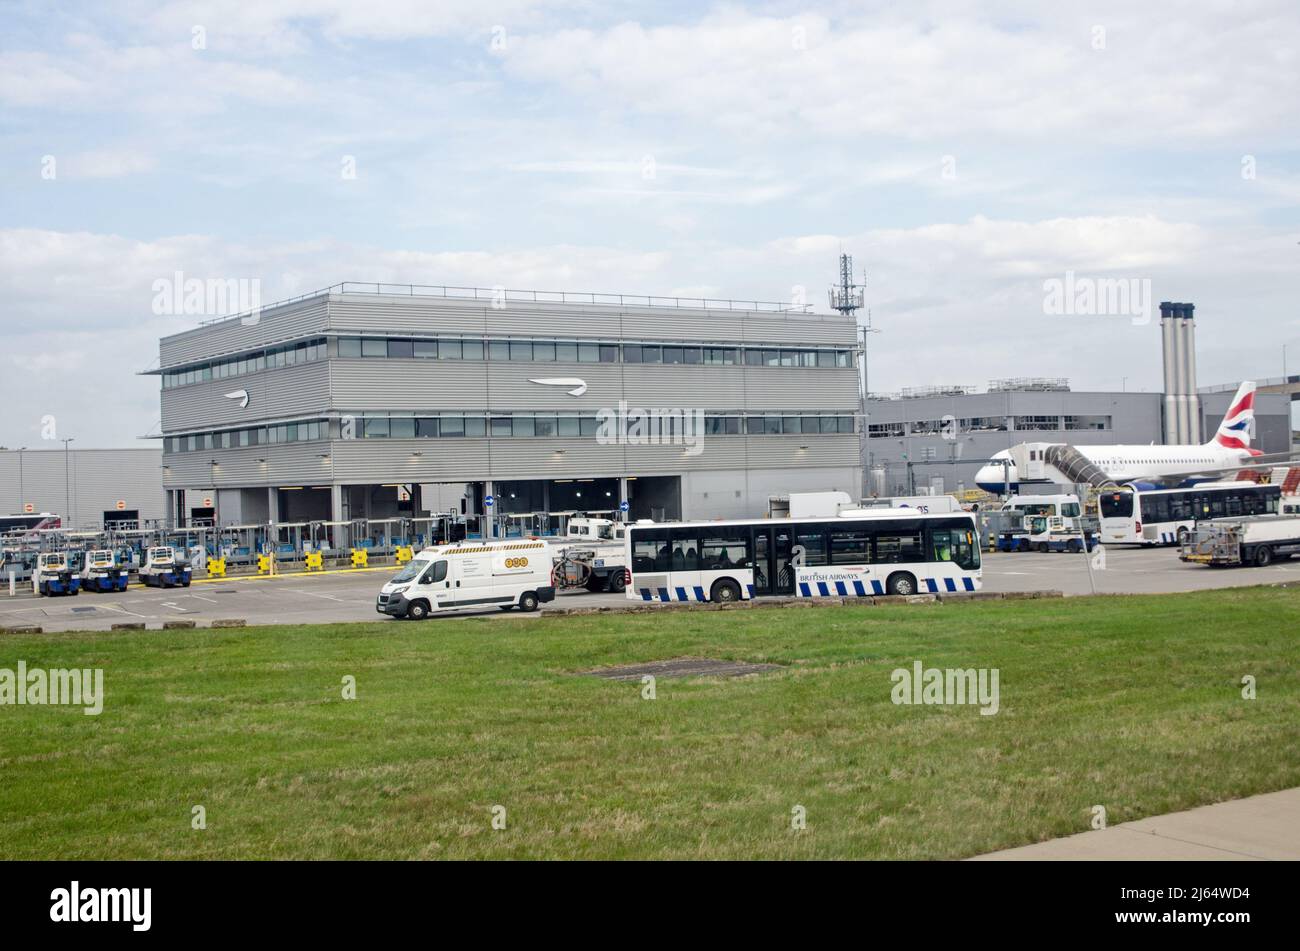 Londra, Regno Unito - 19 aprile 2022: Uffici della British Airways al Terminal 5 dell'aeroporto di Londra Heathrow in una mattinata estiva soleggiata. Foto Stock